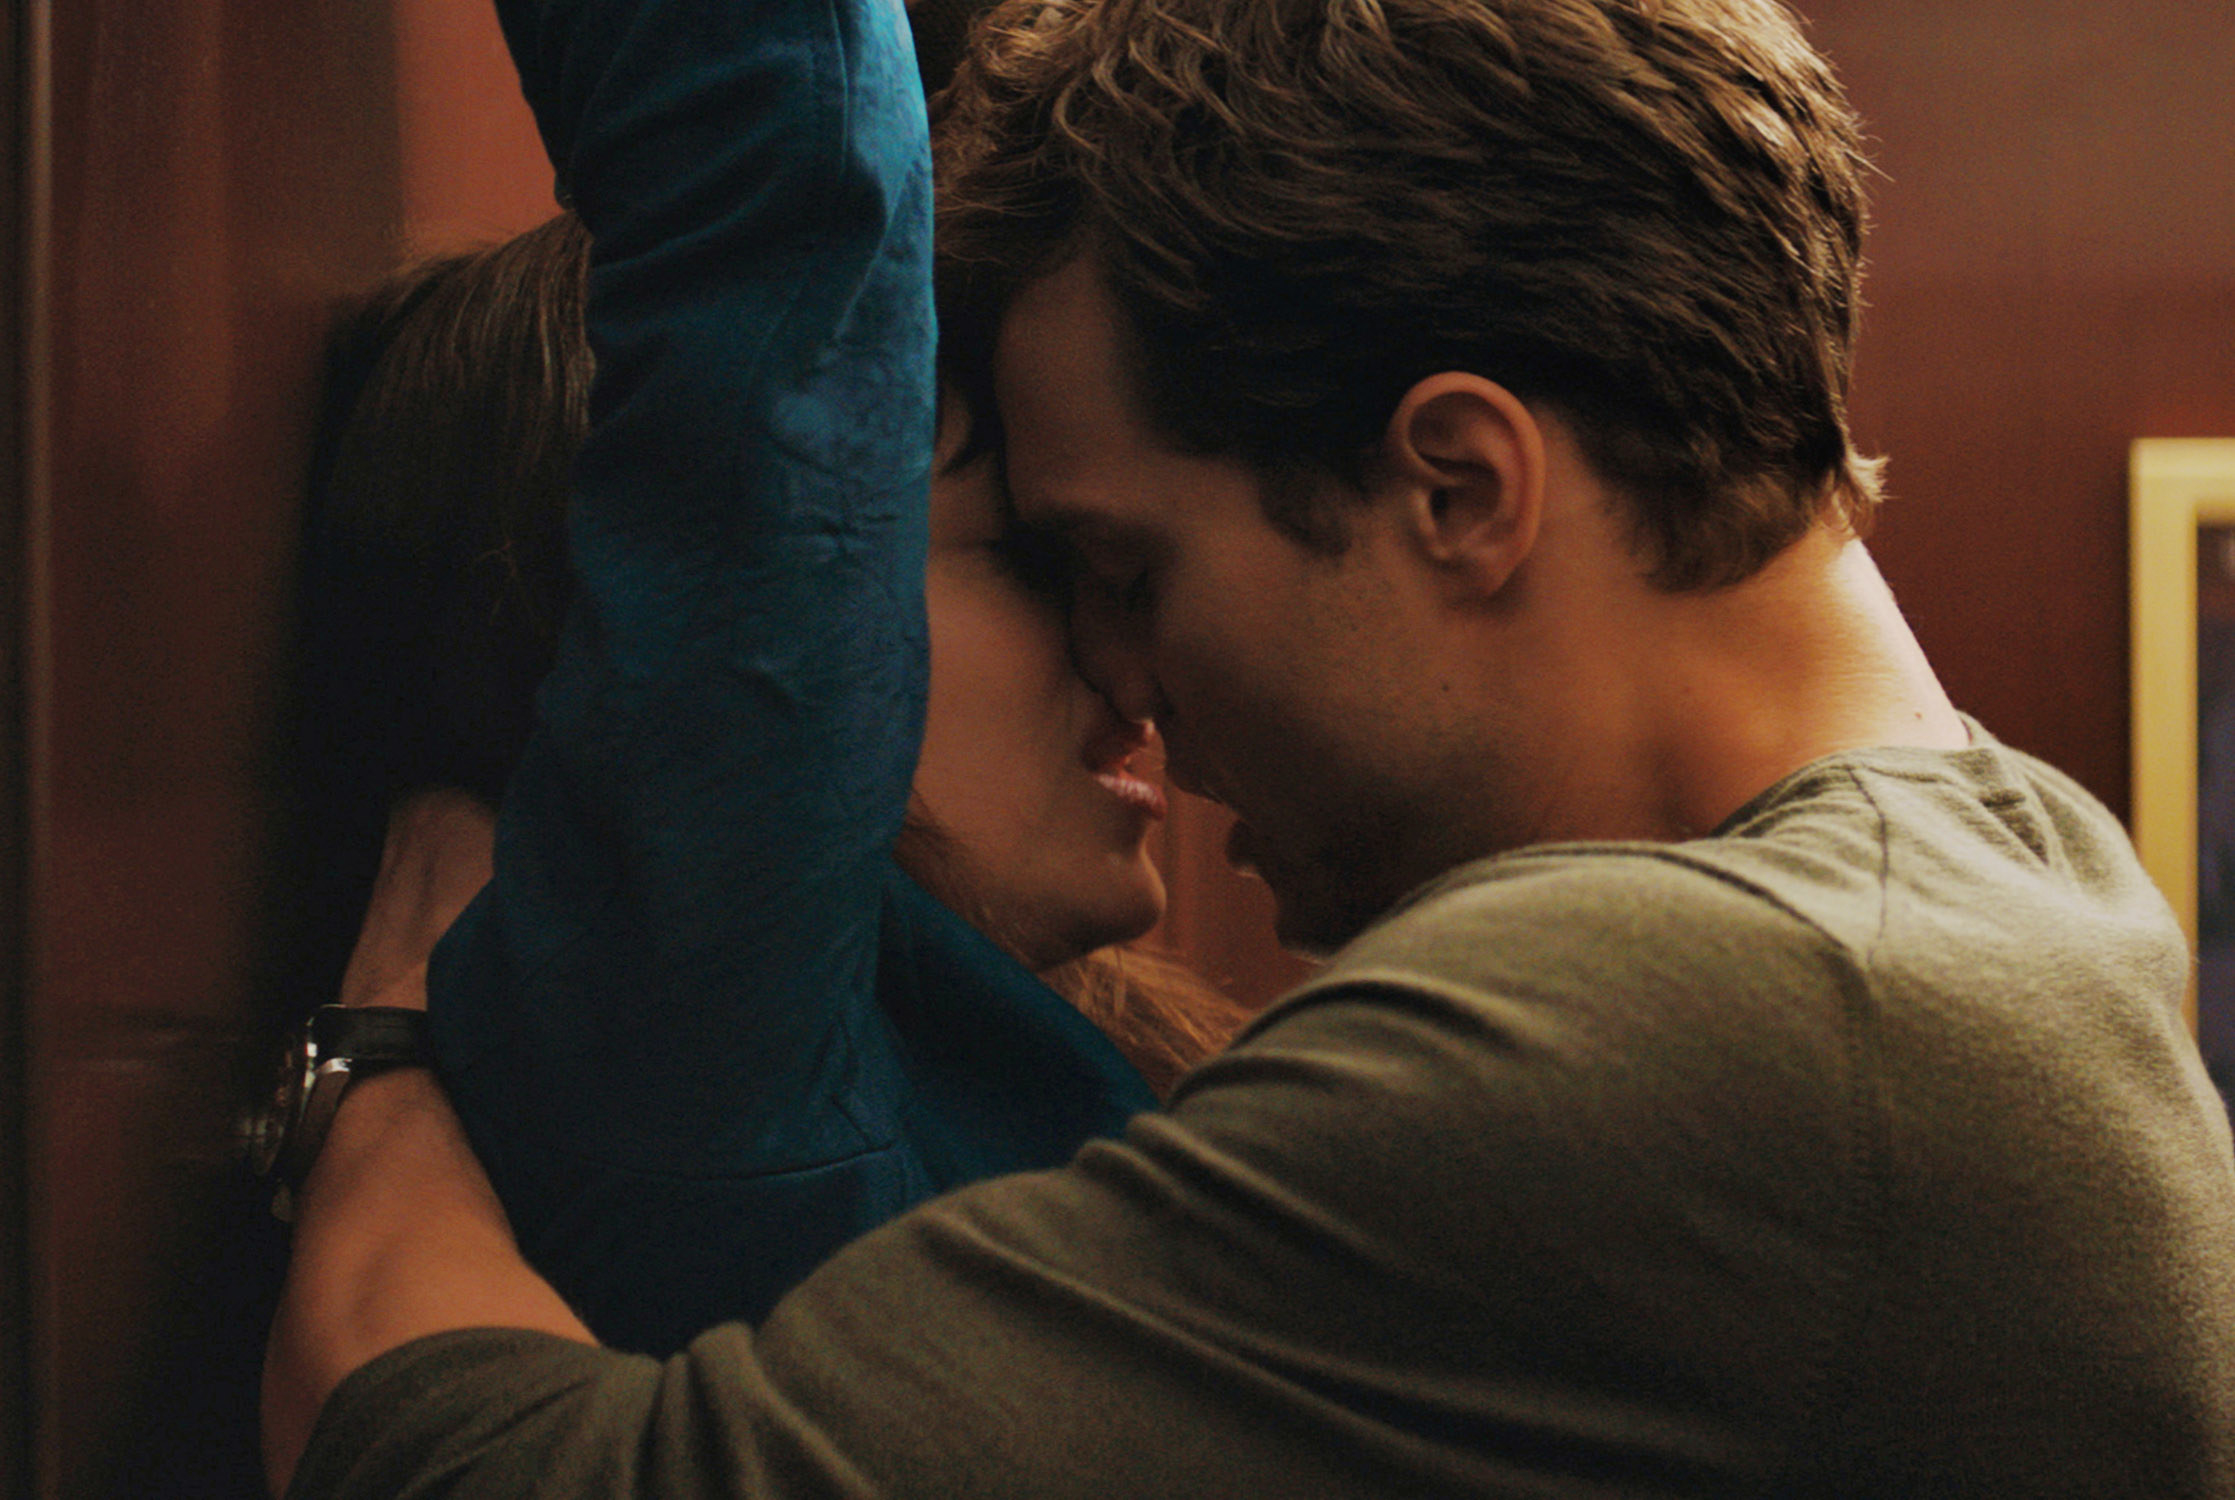 Dakota and Jamie kissing in a scene